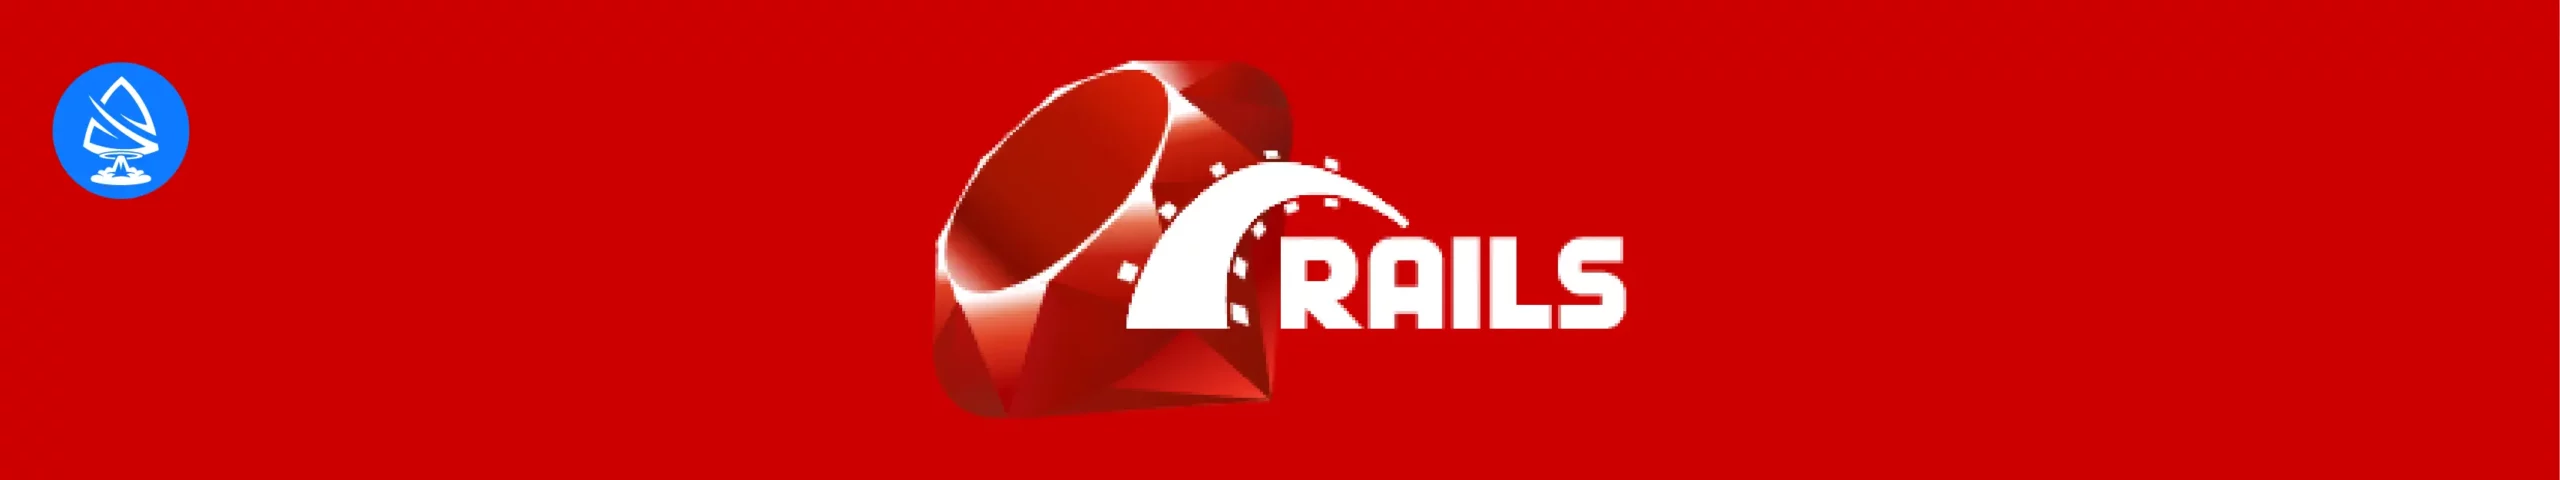 nodejs alternatives: Ruby on Rails